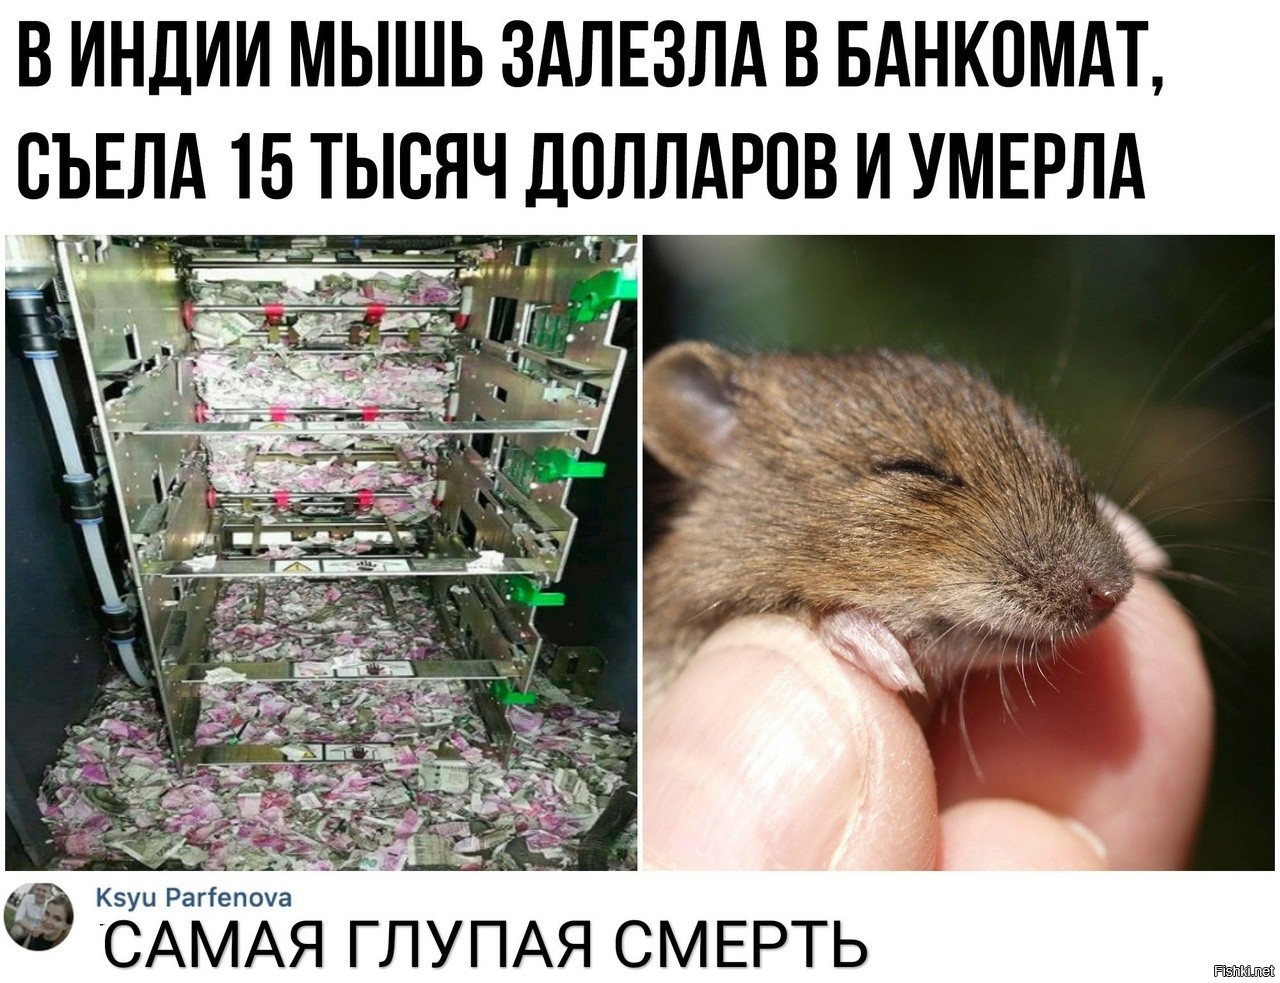 Мышь забралась в Банкомат